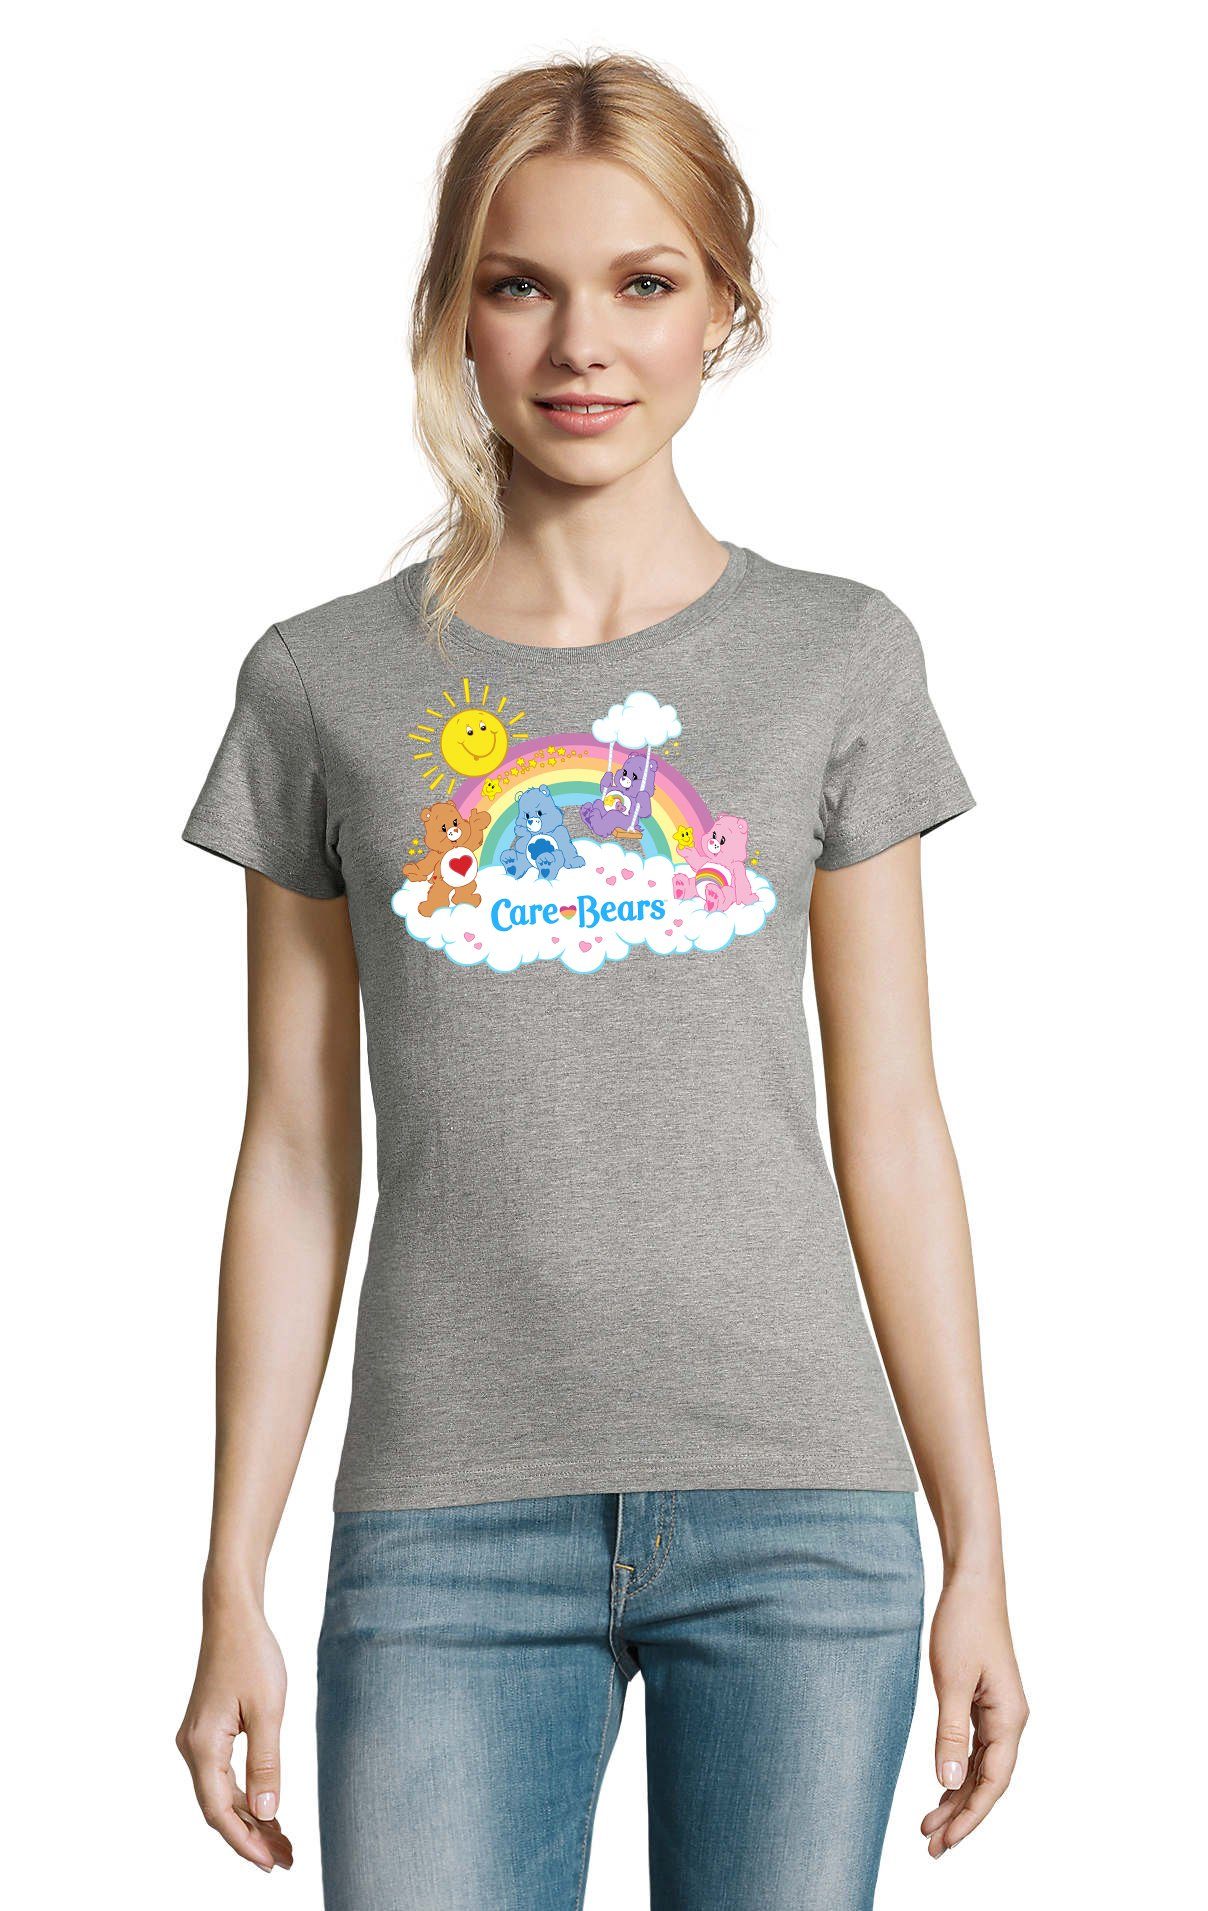 Blondie & Brownie T-Shirt Damen Glücksbärchis Sun Care Bears Hab-Dich-lieb Wolkenland